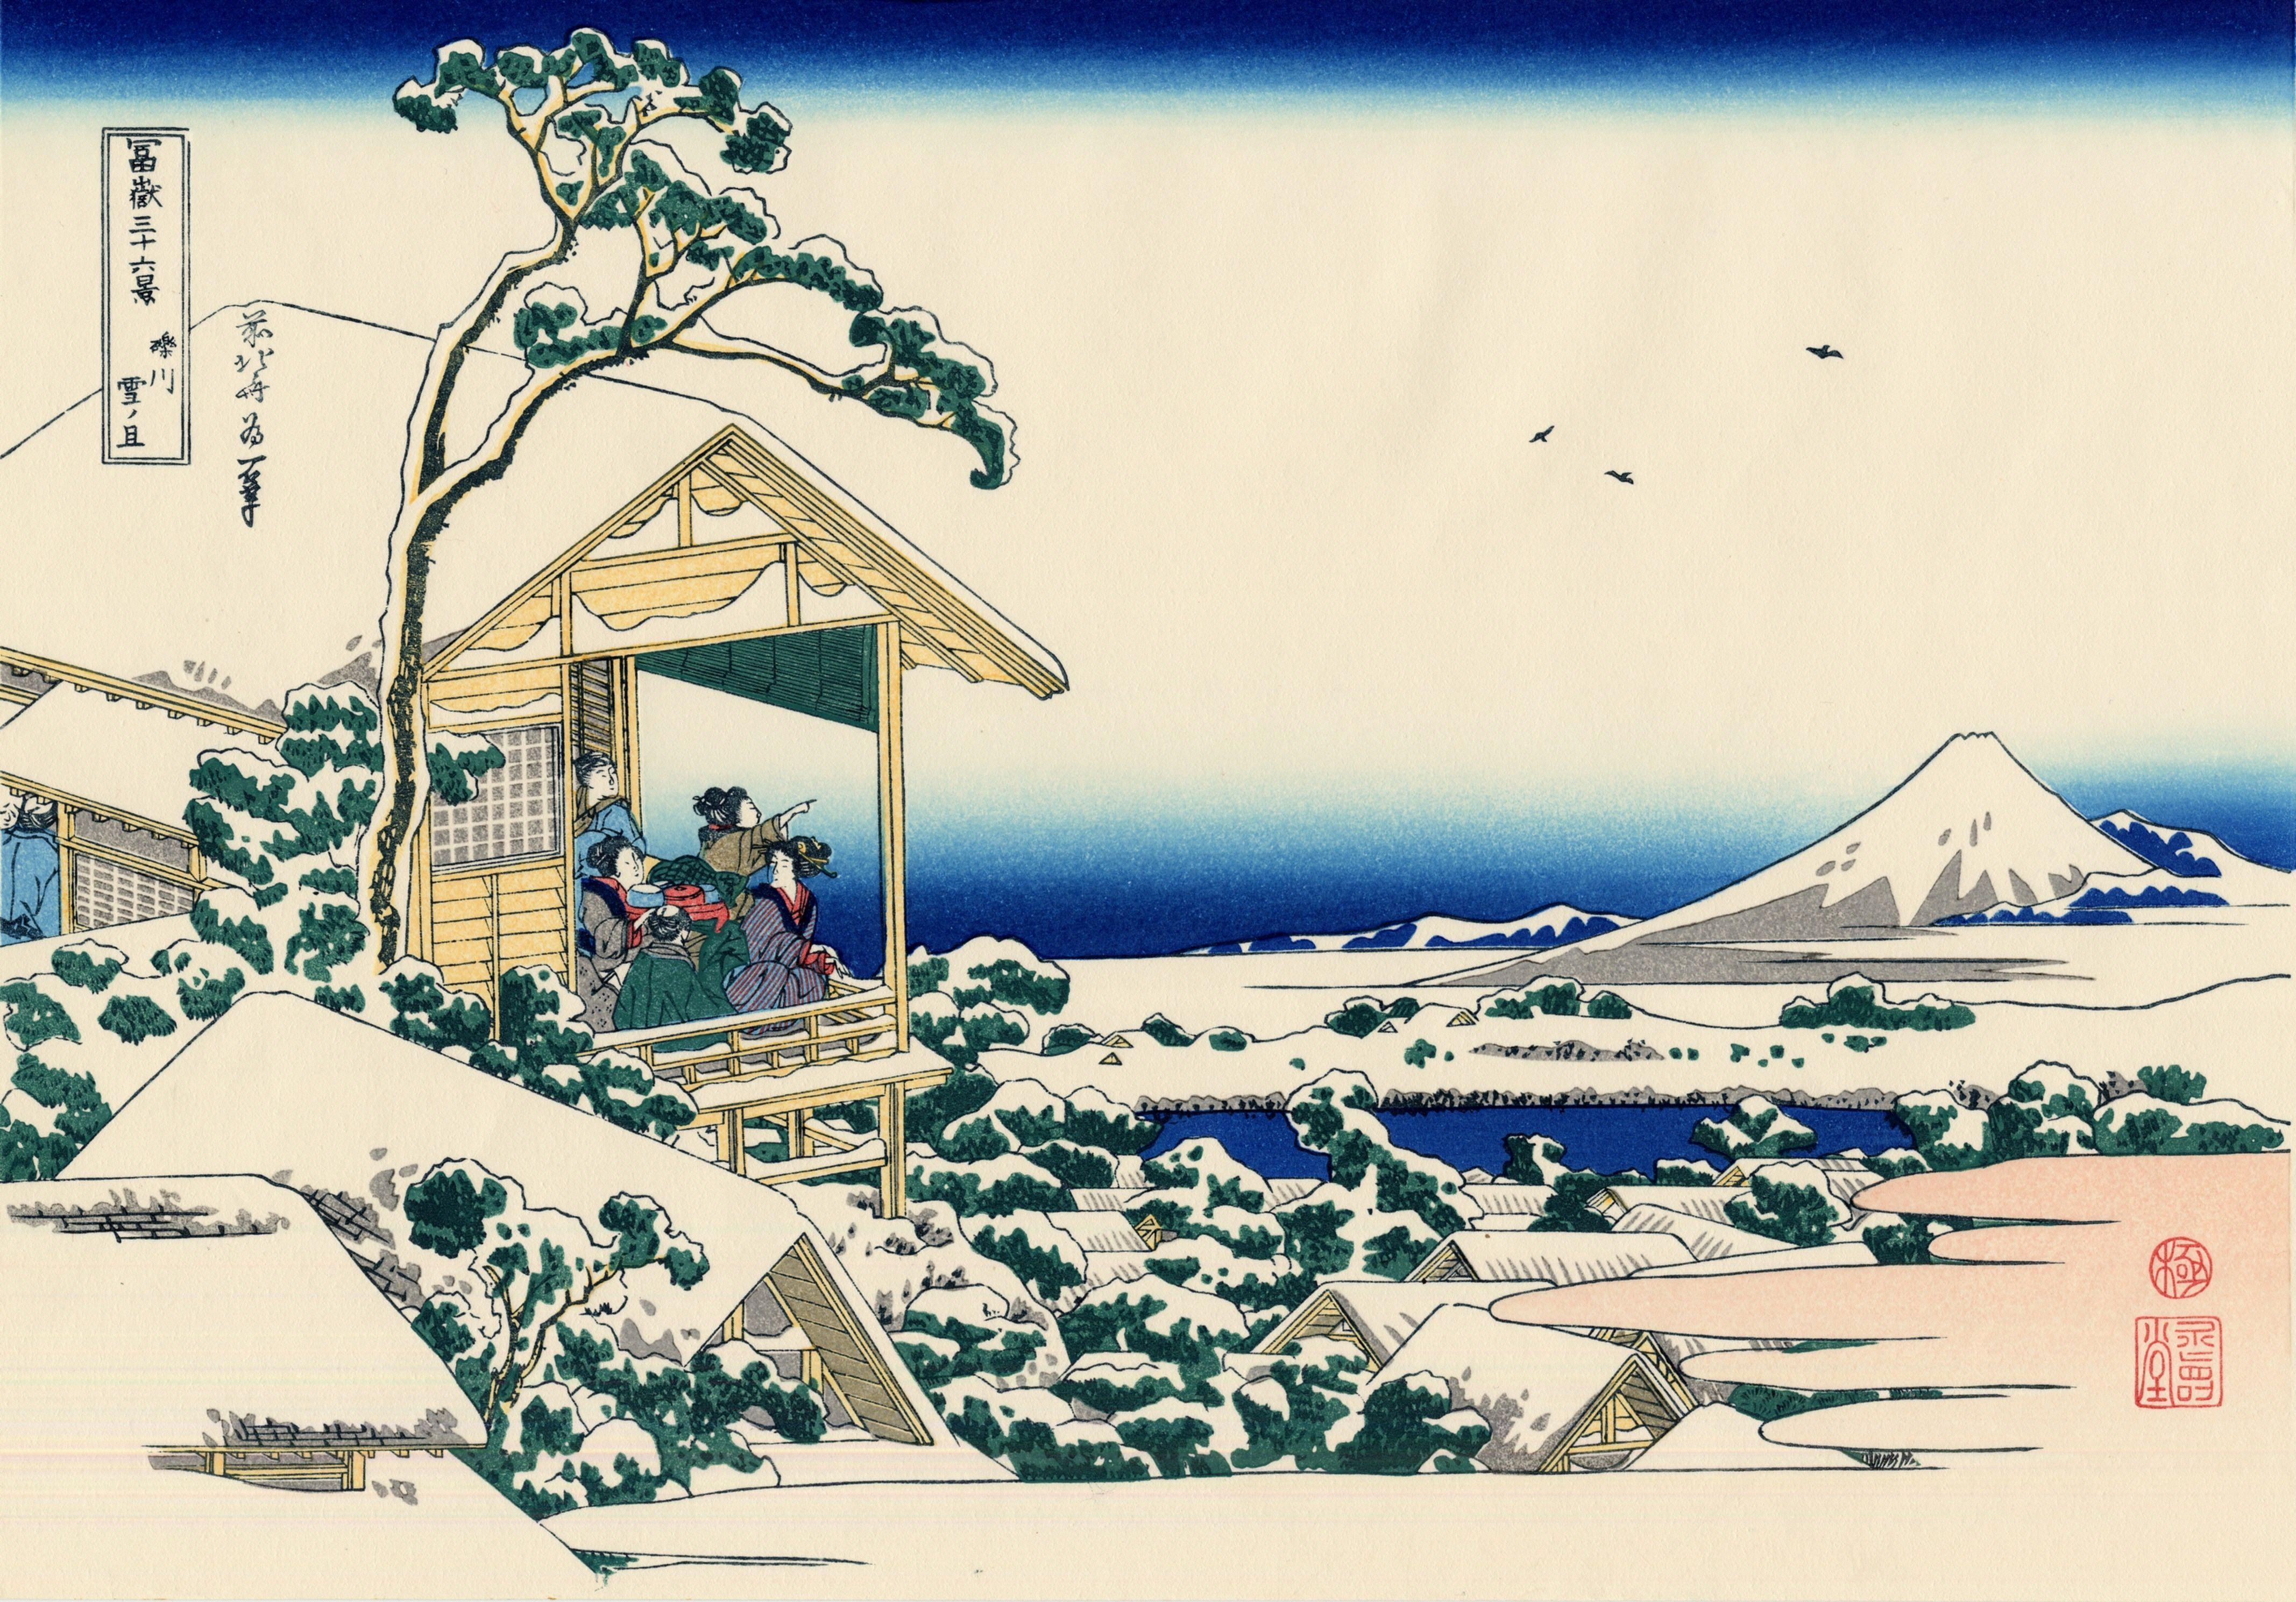 Hokusai del te en Koishikawa. La mañana despues de la